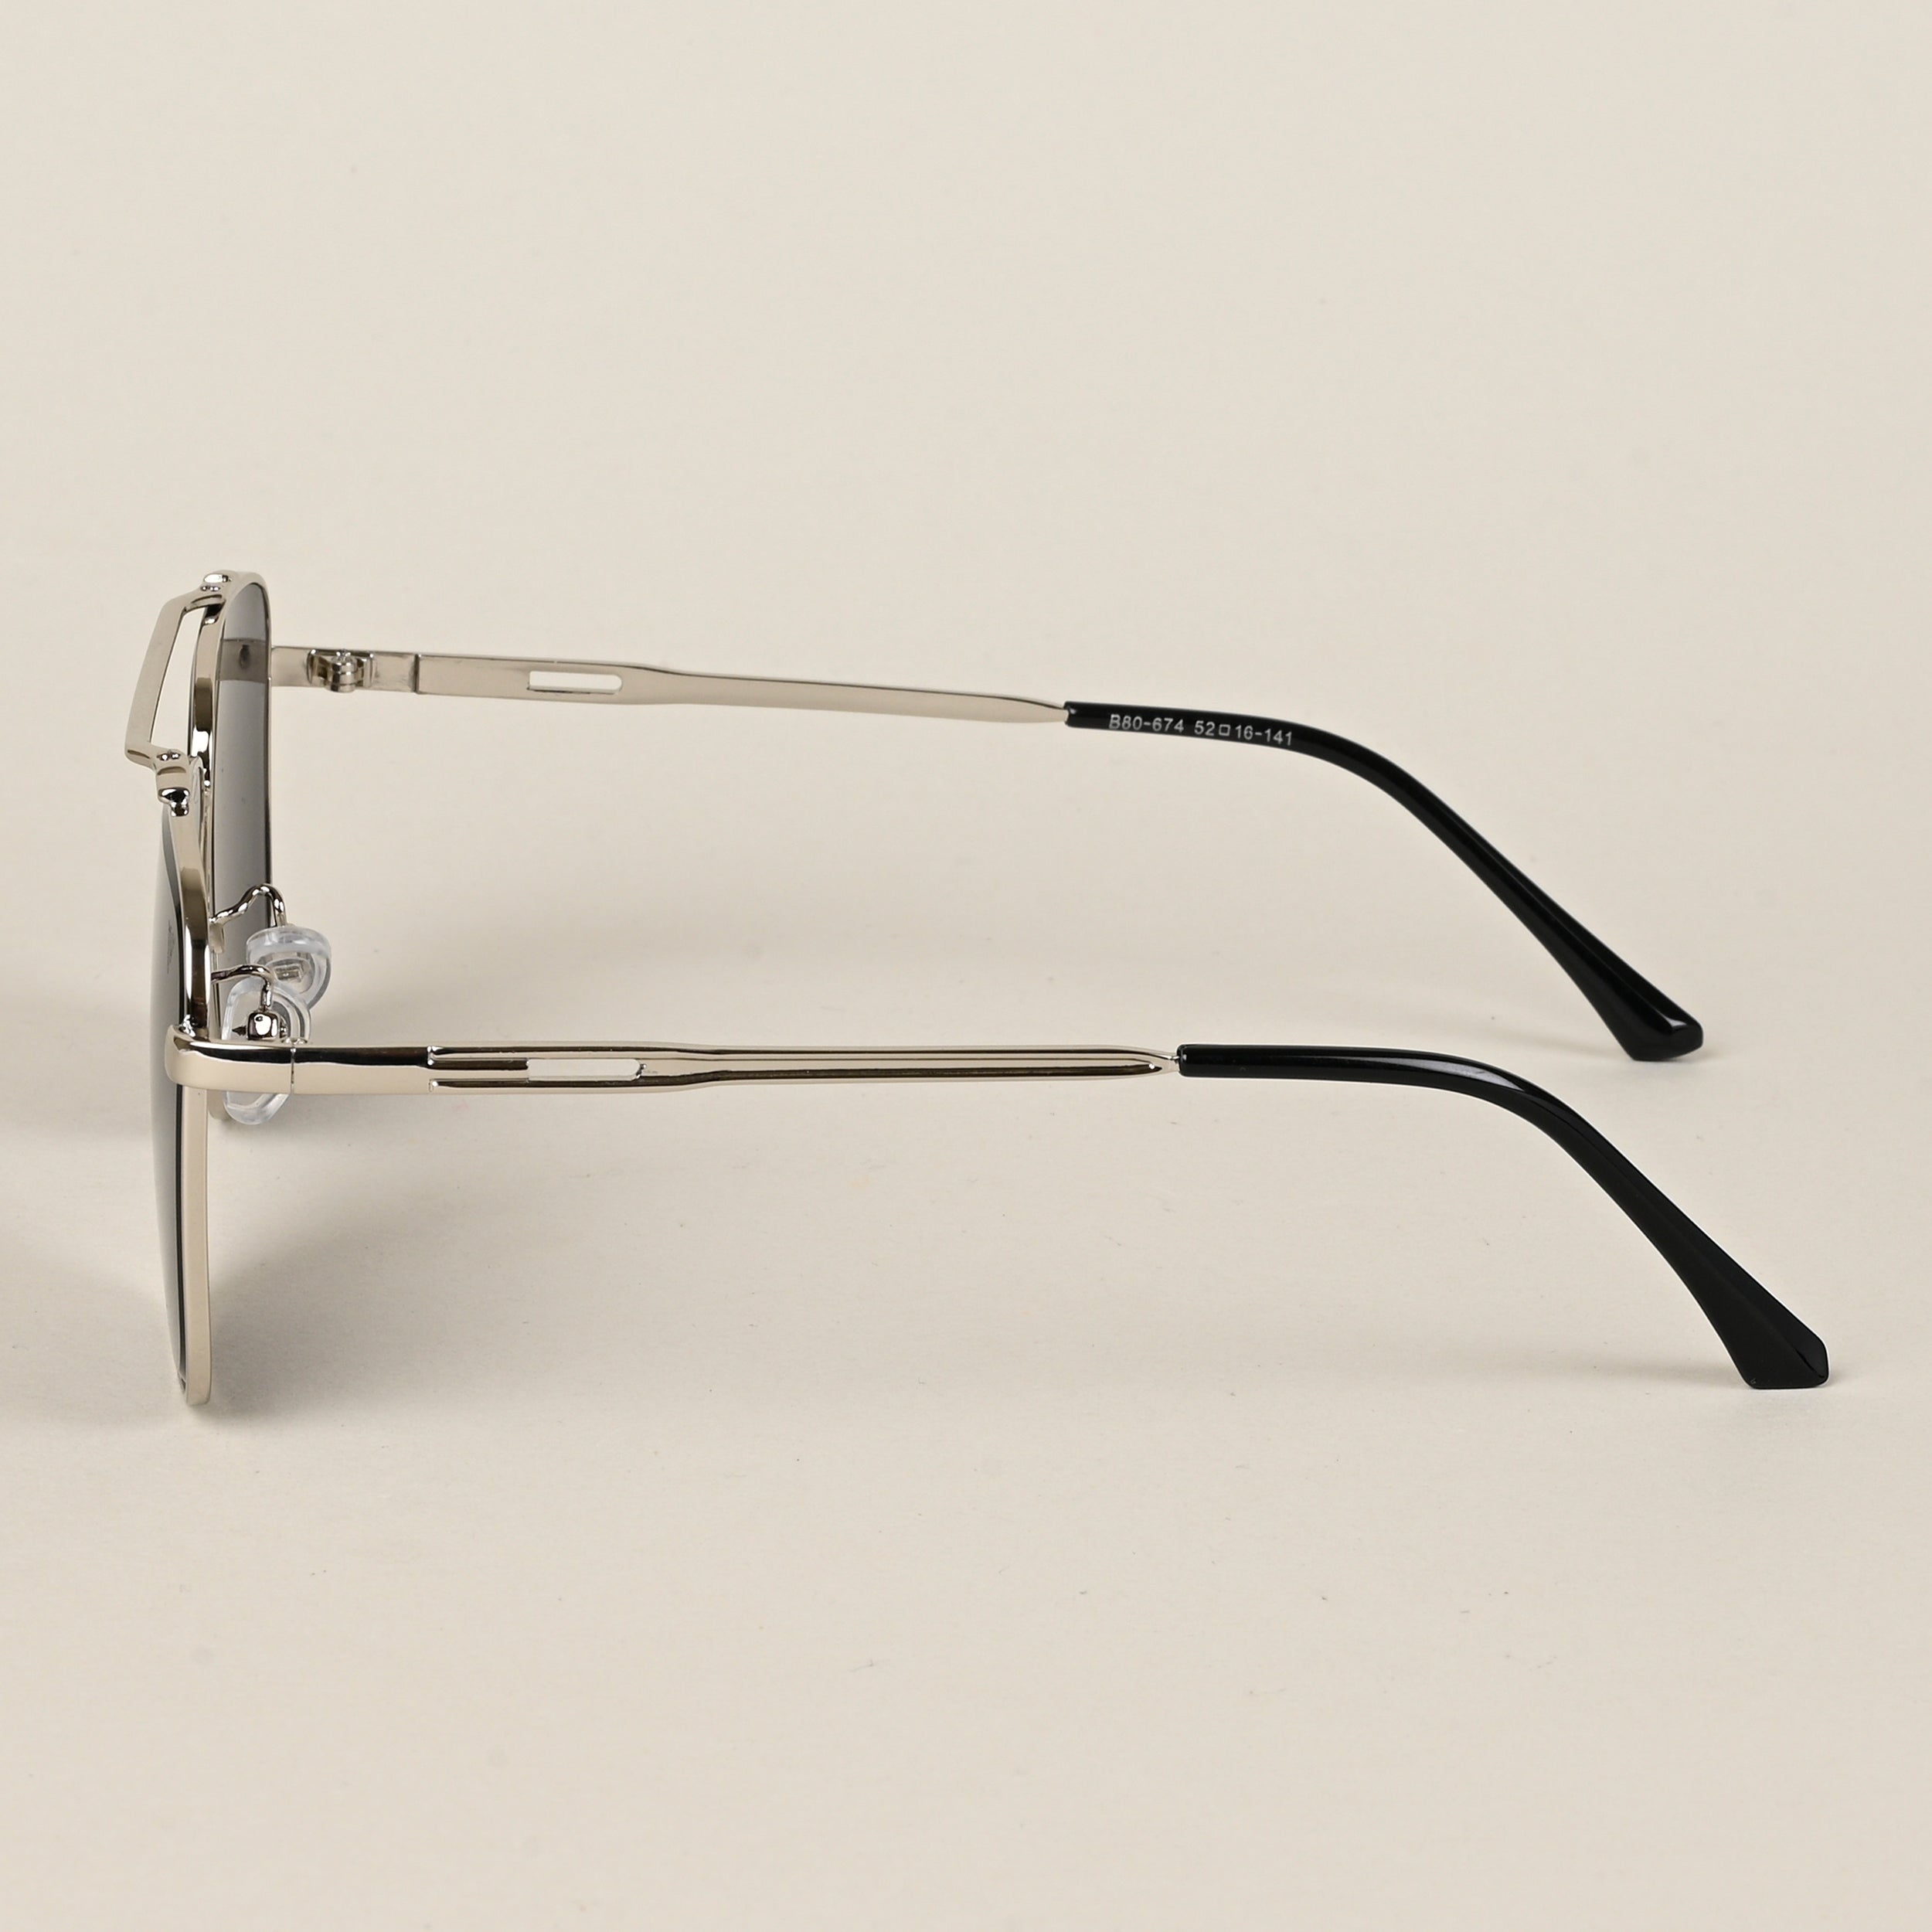 Voyage Aviator Sunglasses for Men & Women (Black Lens | Silver Frame  - MG5195)